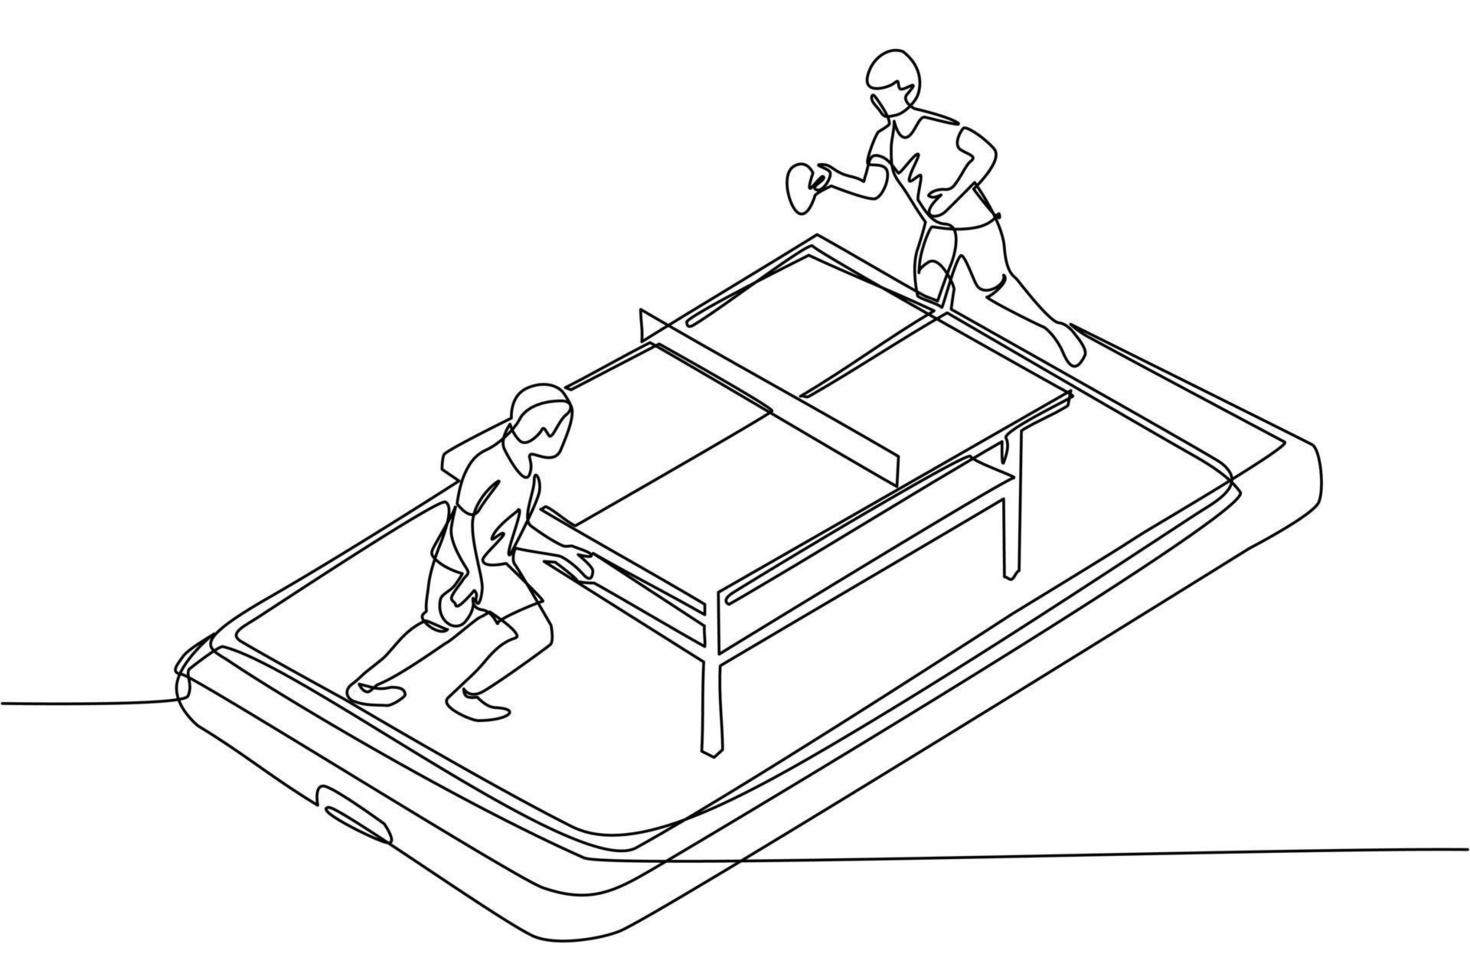 campo da ping pong con disegno a linea continua singolo con due giocatori sullo schermo dello smartphone. giocatori di ping pong da competizione sportiva professionale durante la partita, app mobile. vettore di disegno di una linea